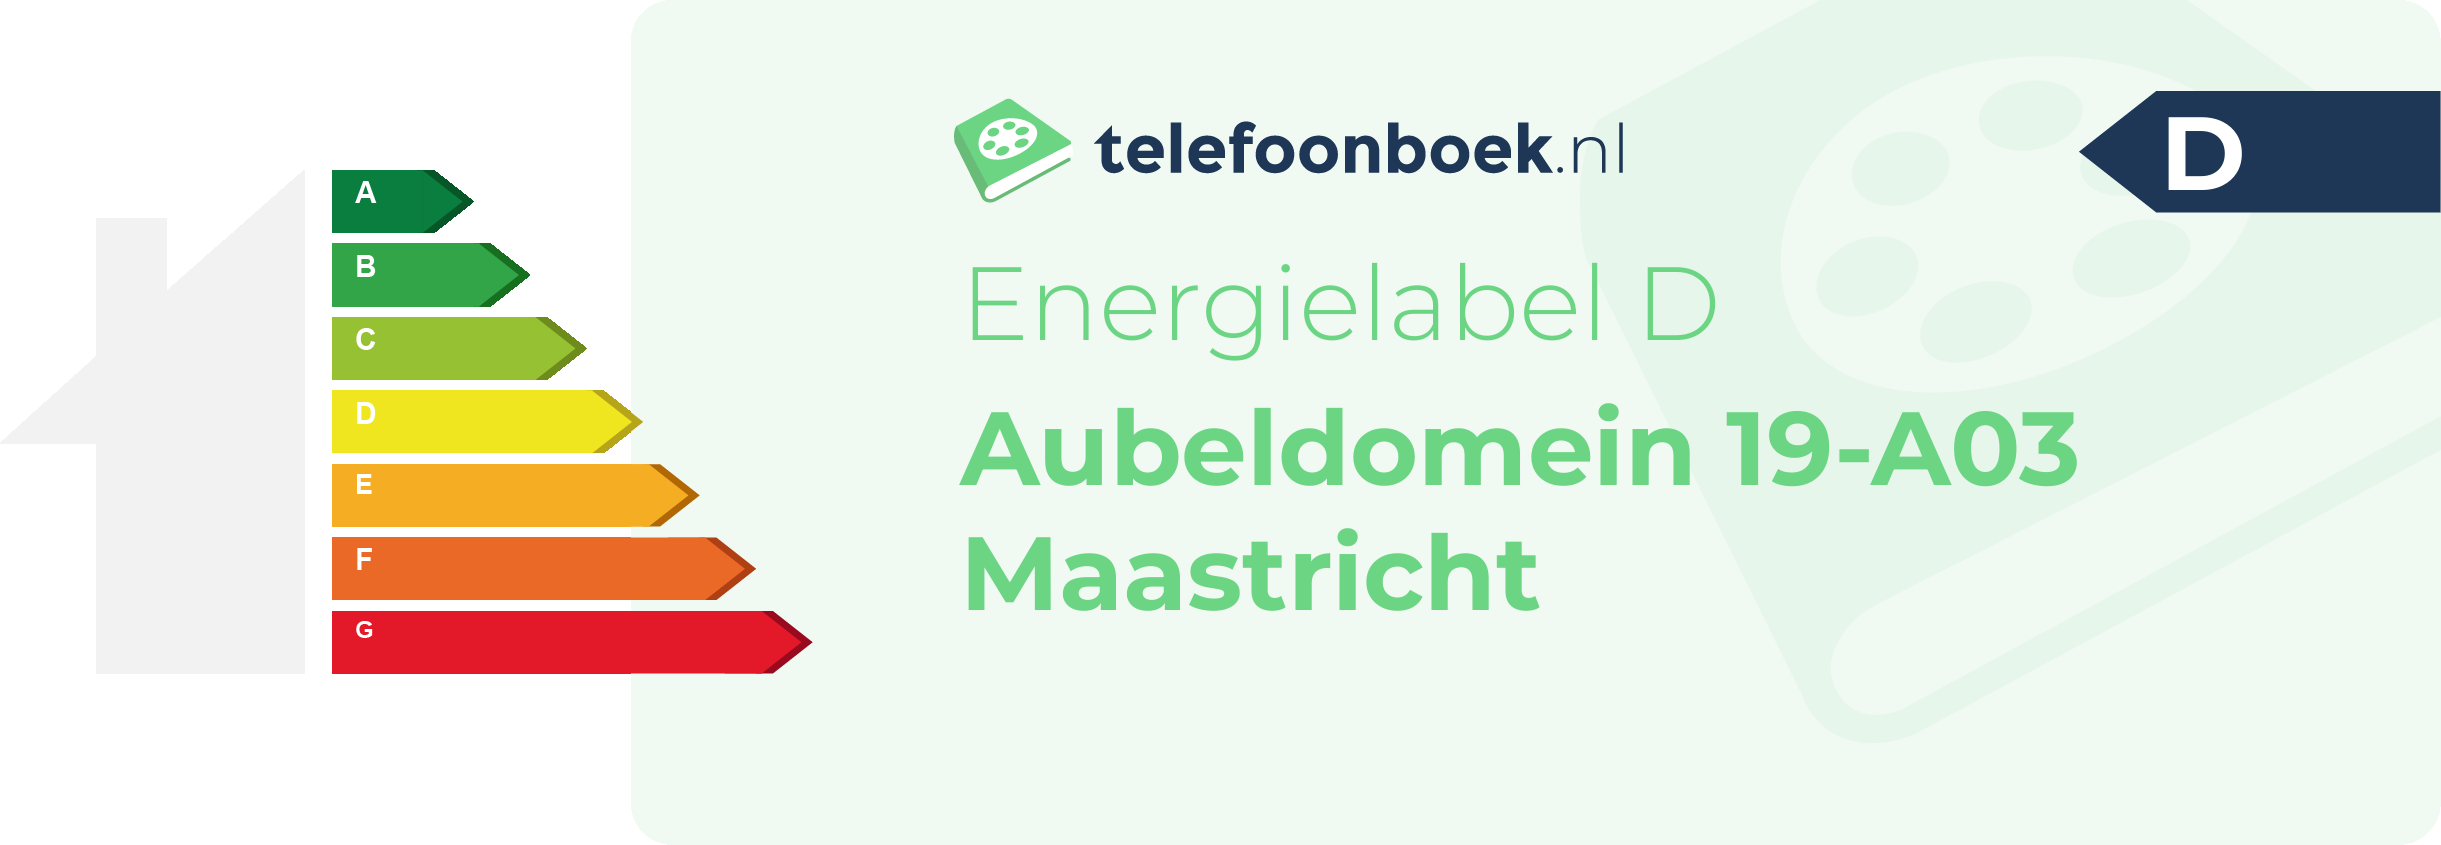 Energielabel Aubeldomein 19-A03 Maastricht